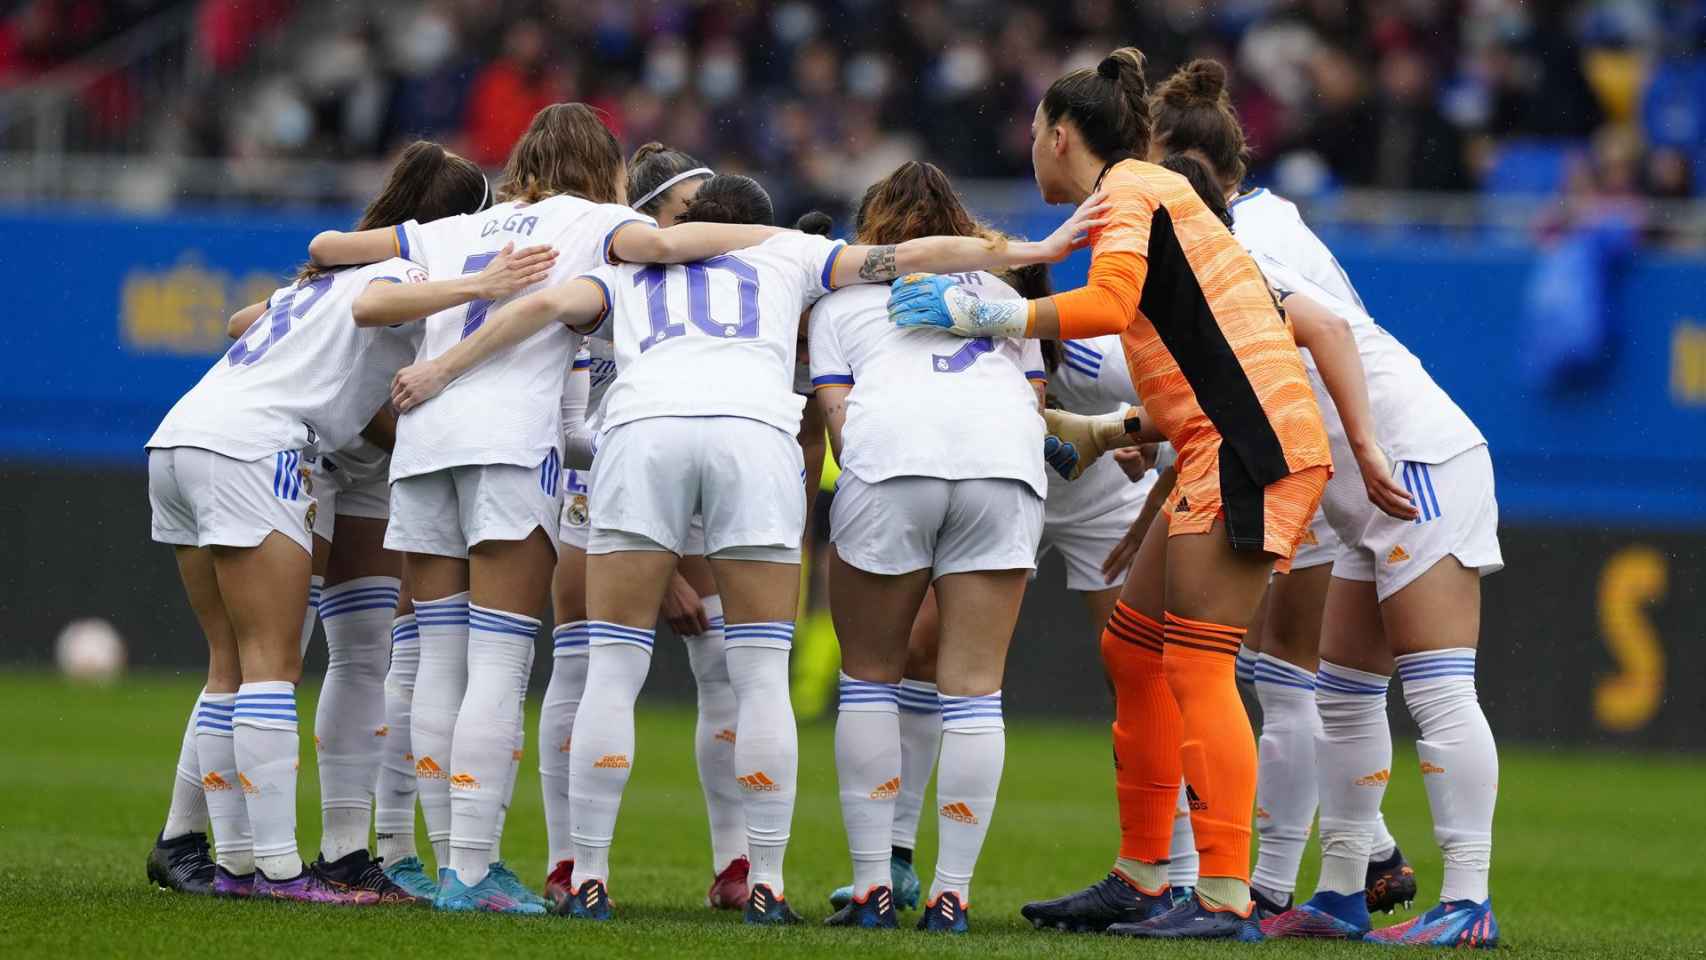 Piña de las jugadoras del Real Madrid Femenino antes del comienzo de El Clásico